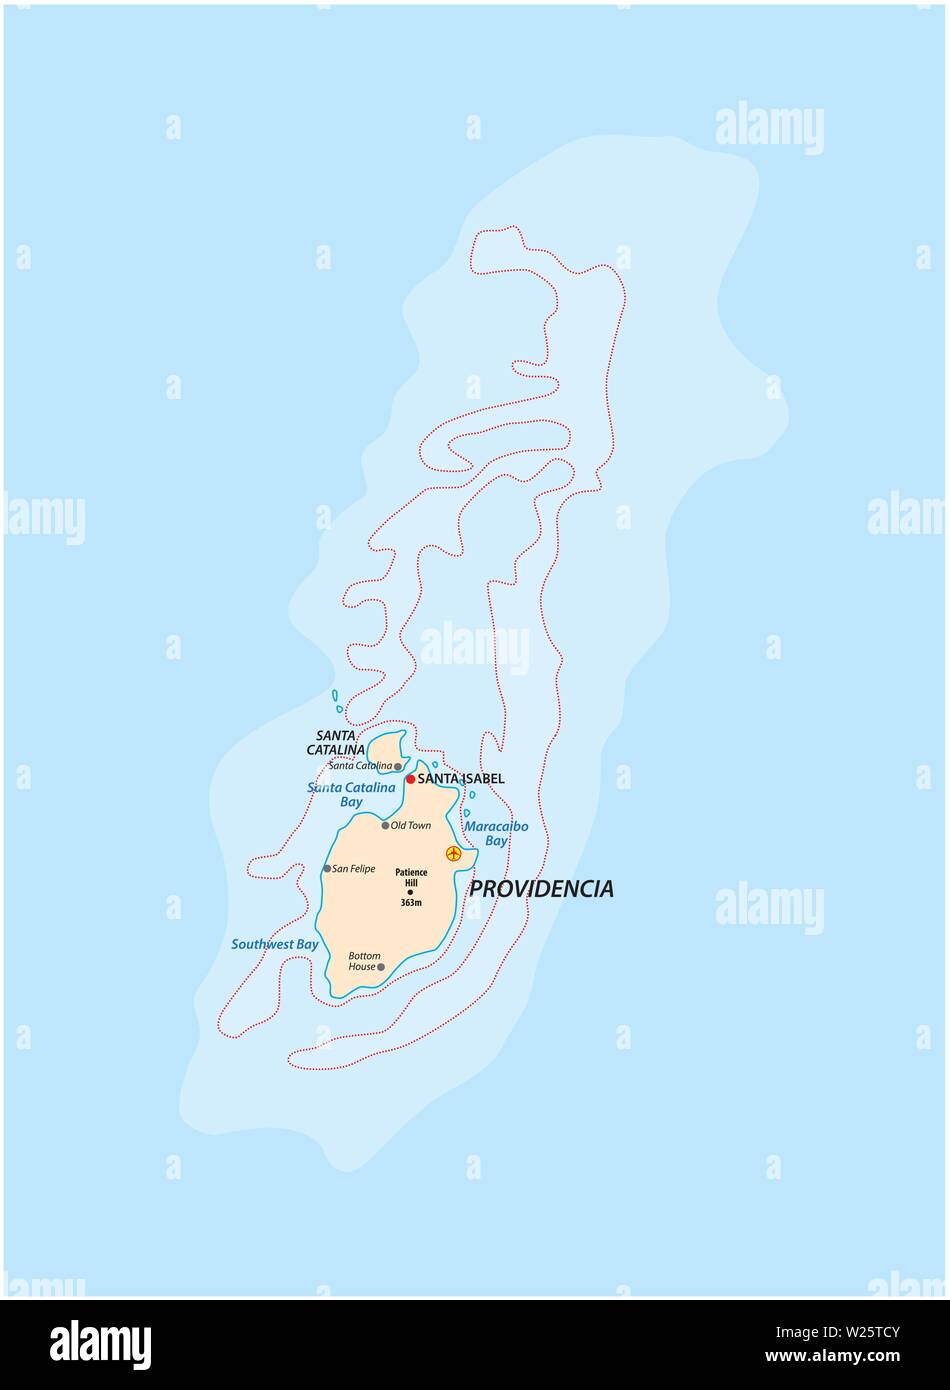 Petit contour plan d'îles des Caraïbes colombiennes Providencia et Santa Catalina Illustration de Vecteur